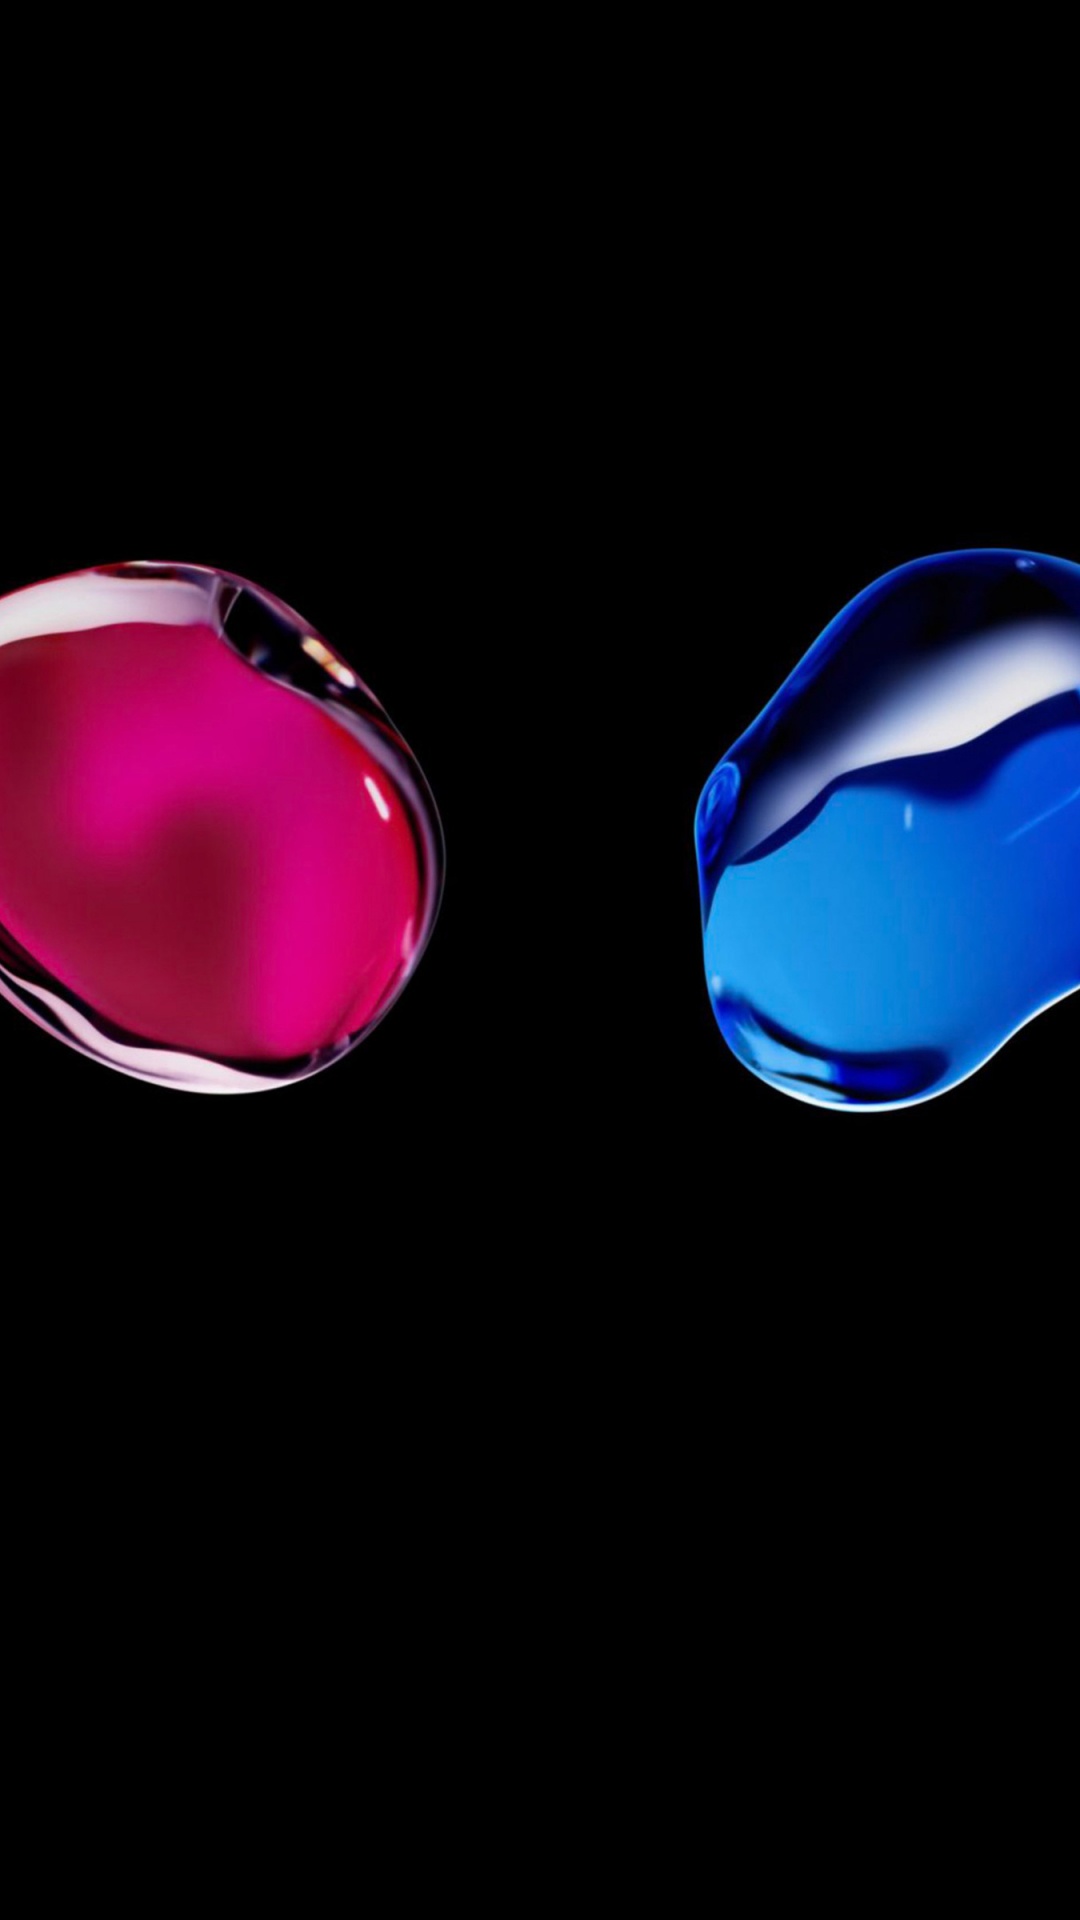 Apple, 时尚的附件, 宝石, 电蓝色的, 珠宝 壁纸 1080x1920 允许